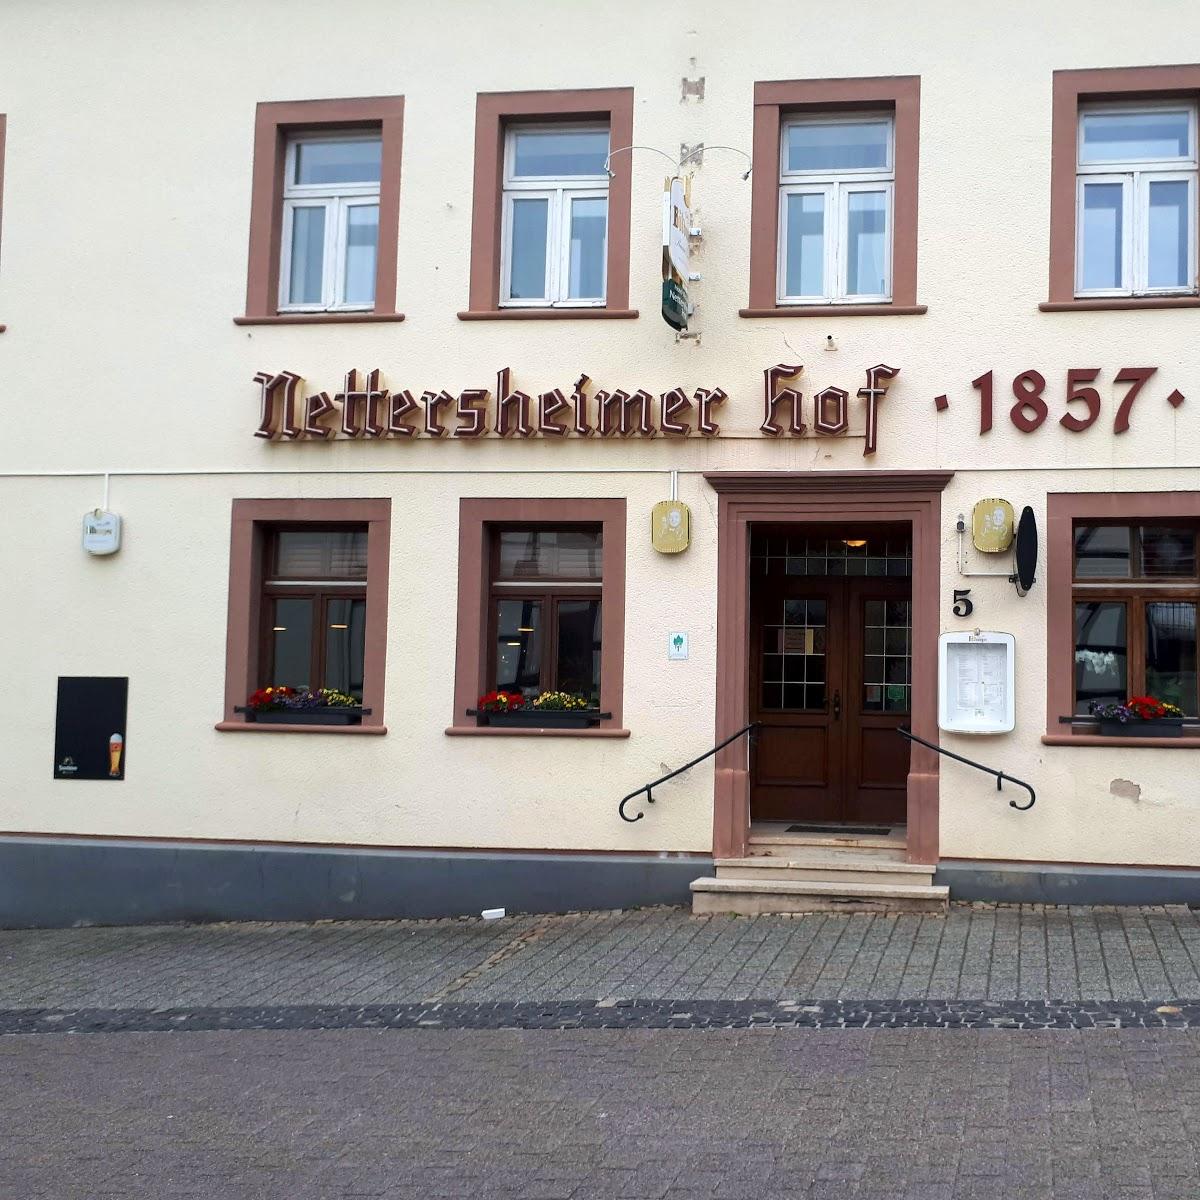 Restaurant "Hotel - Restaurant er Hof" in  Nettersheim